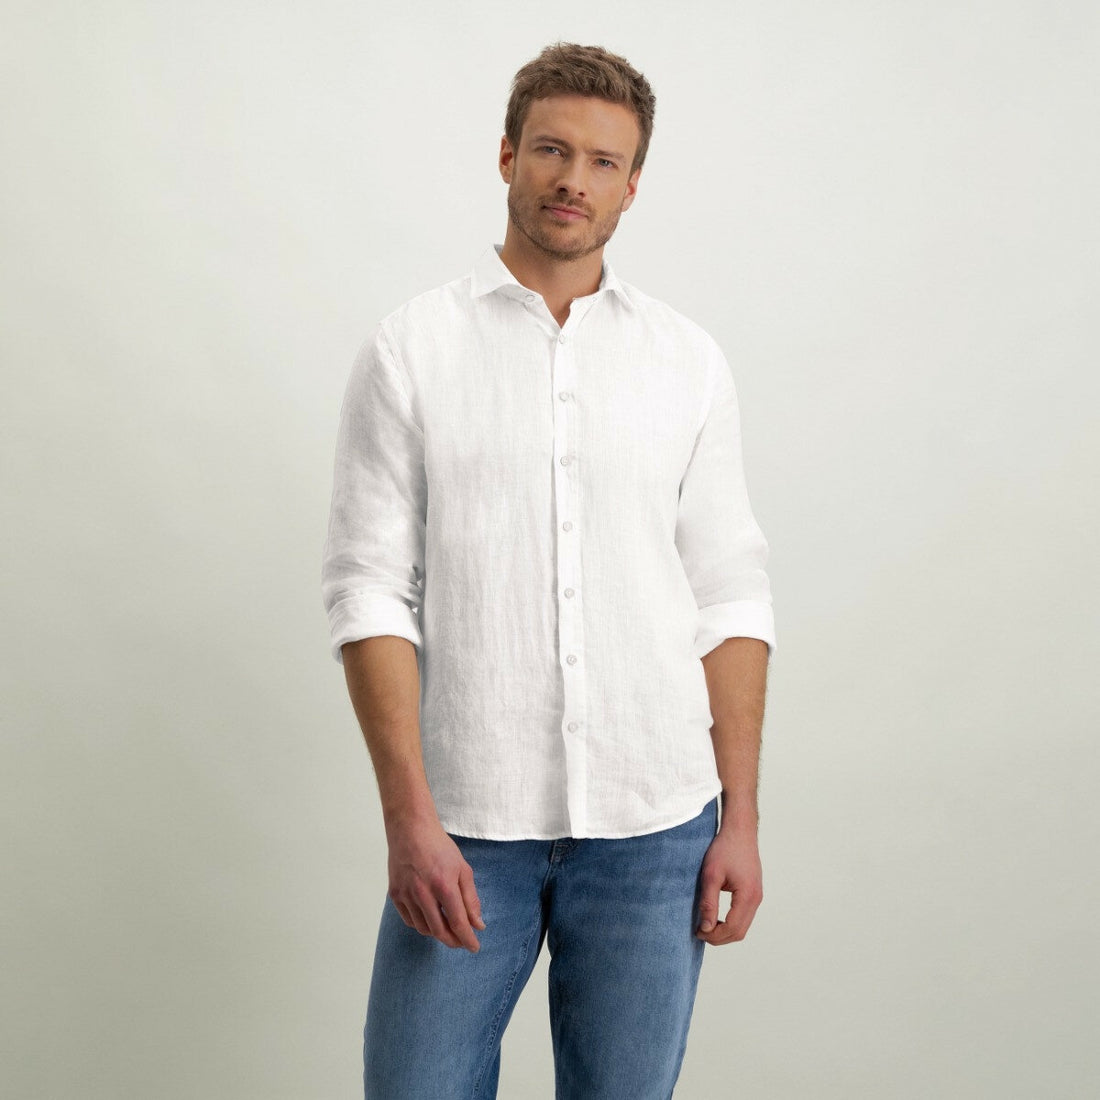 Overhemd van hoogwaardig linnen - wit